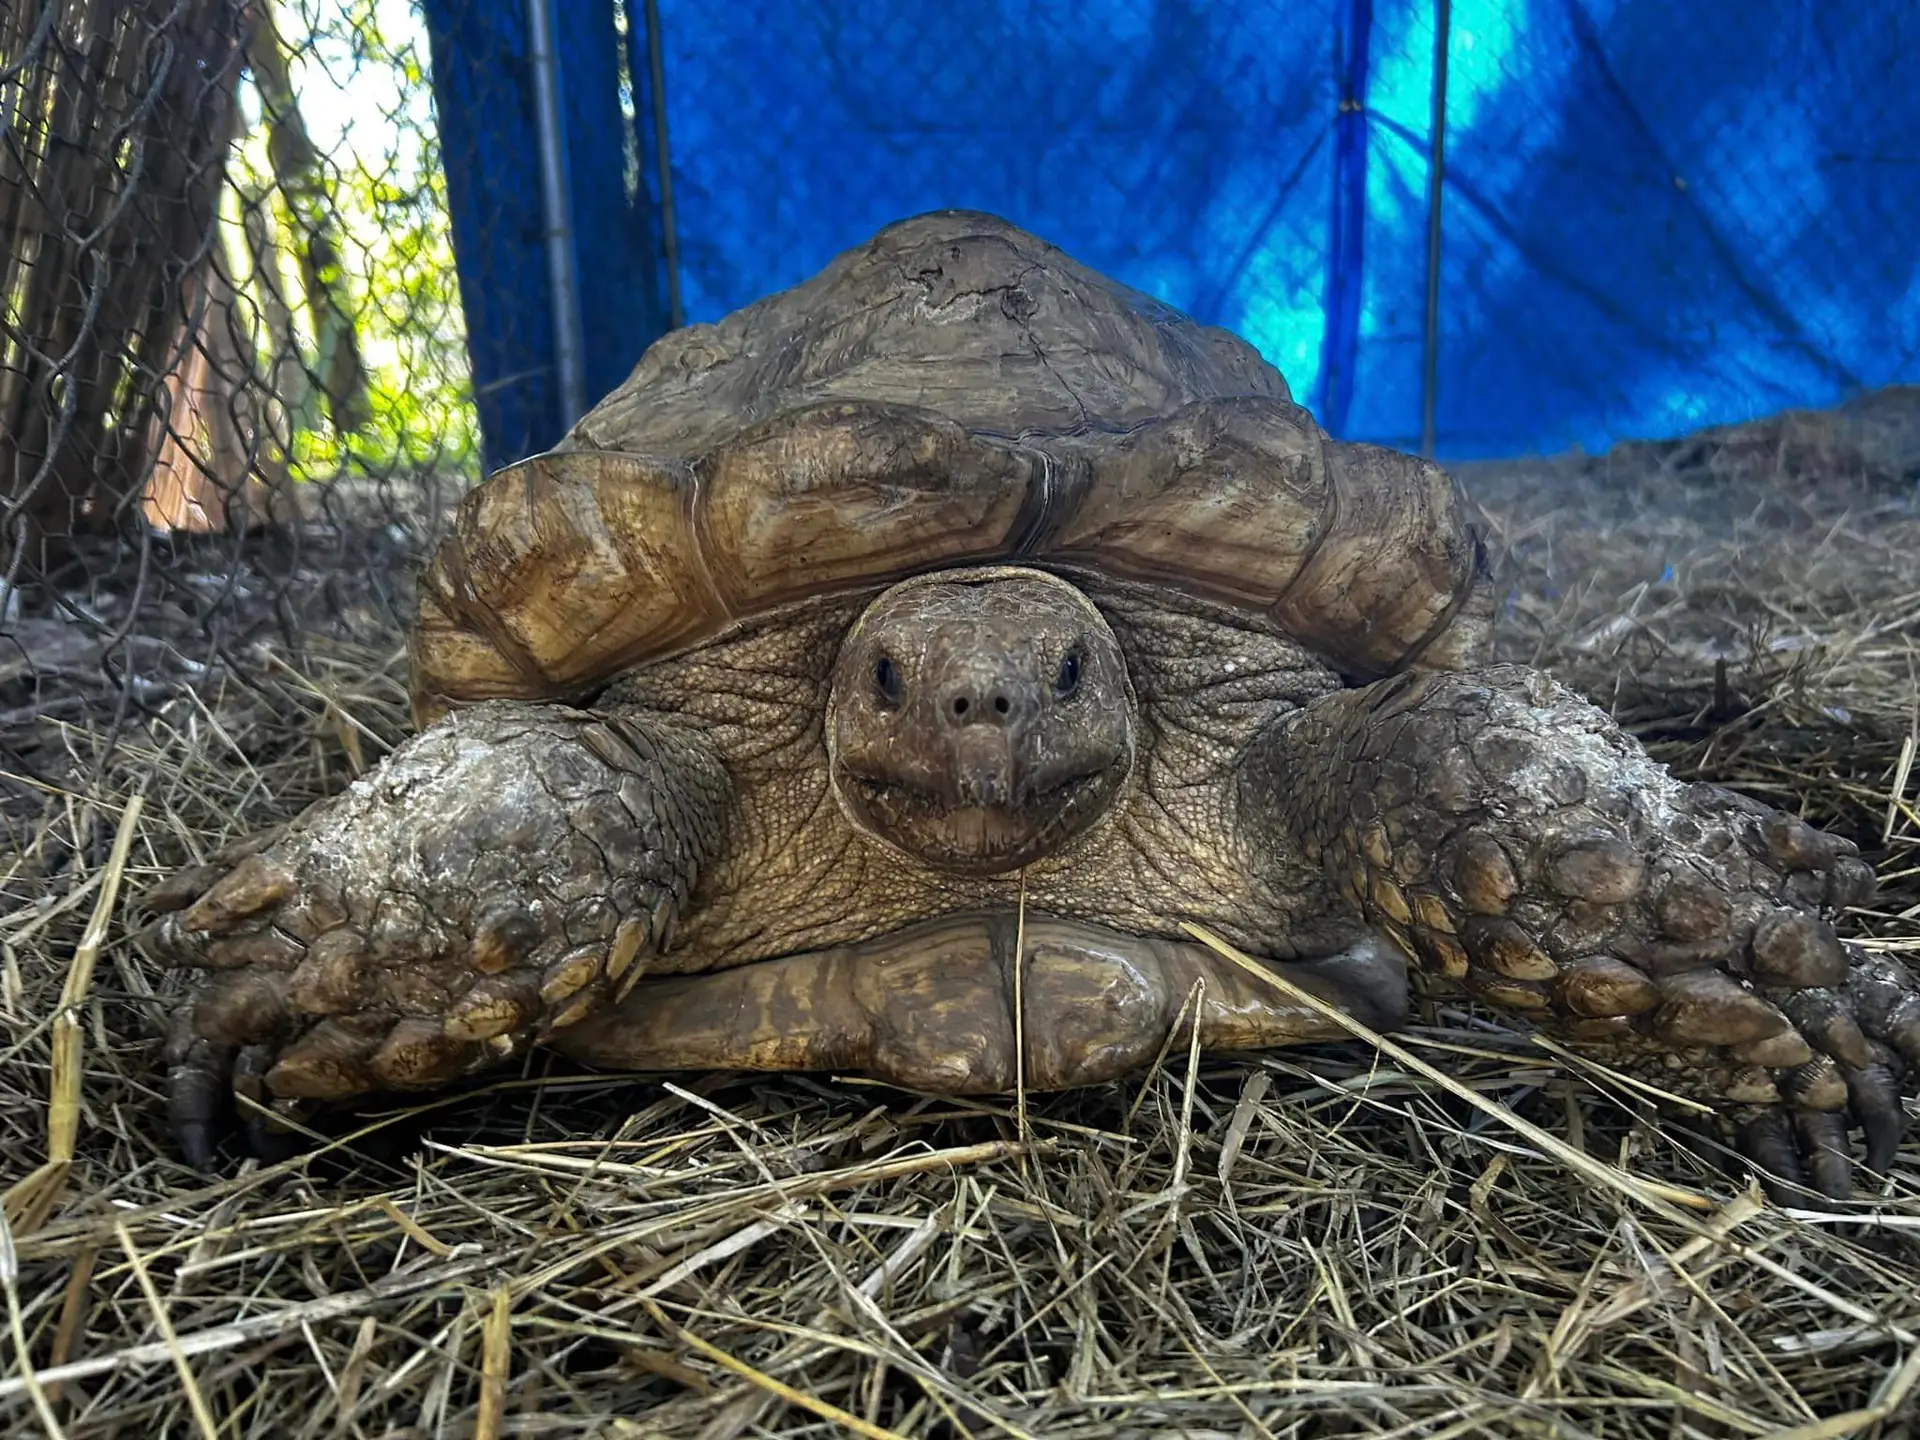 “Un final feliz”: tres años después, la tortuga encuentra a su dueño